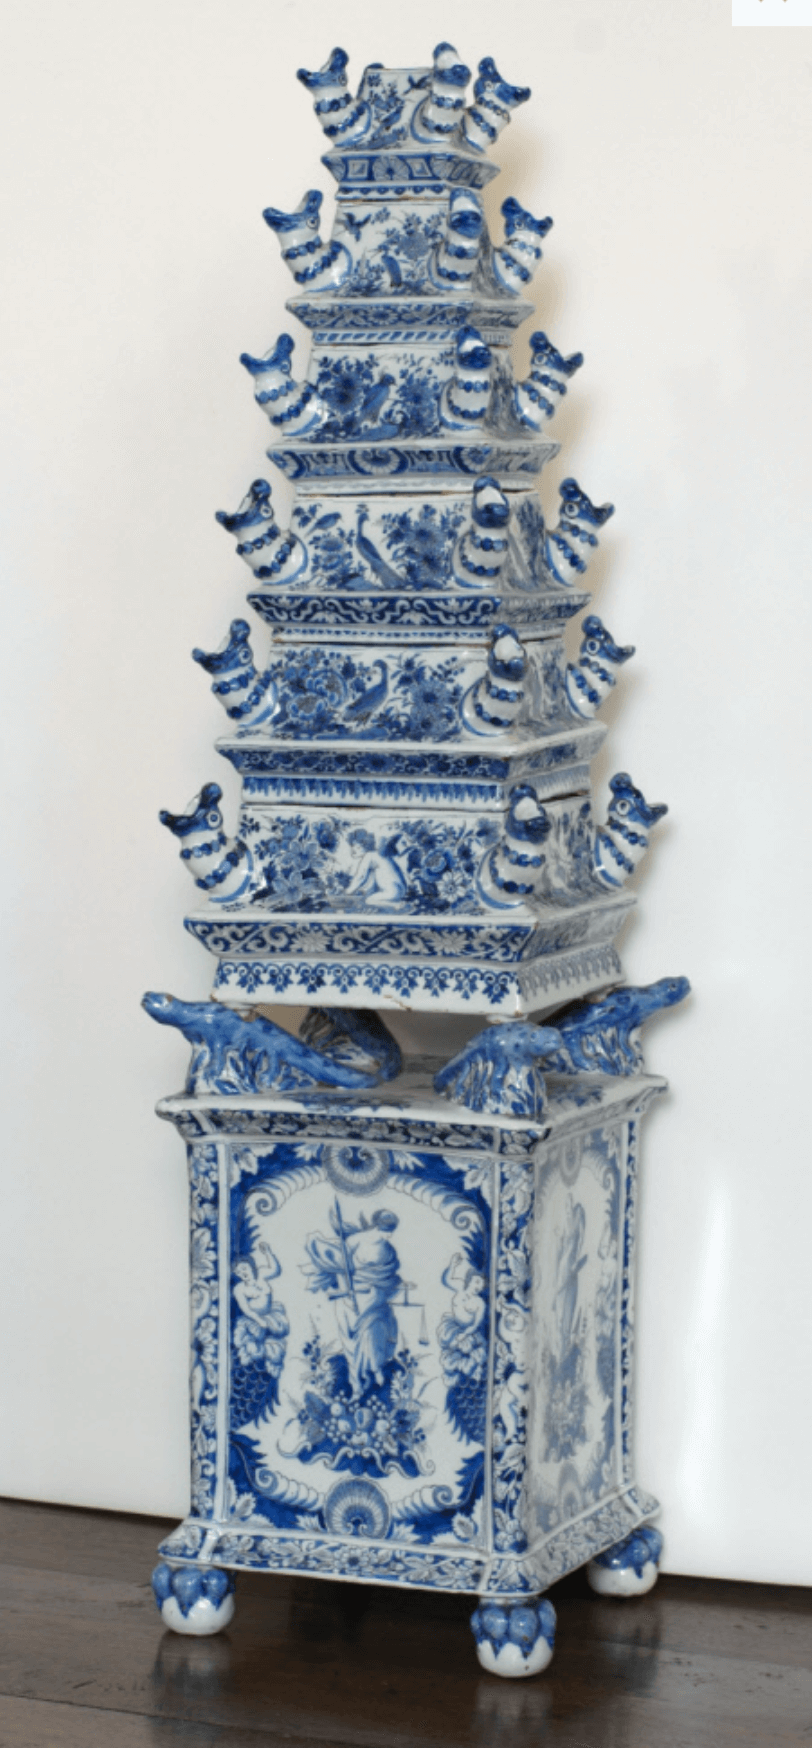 Flower vase pyramid blue white